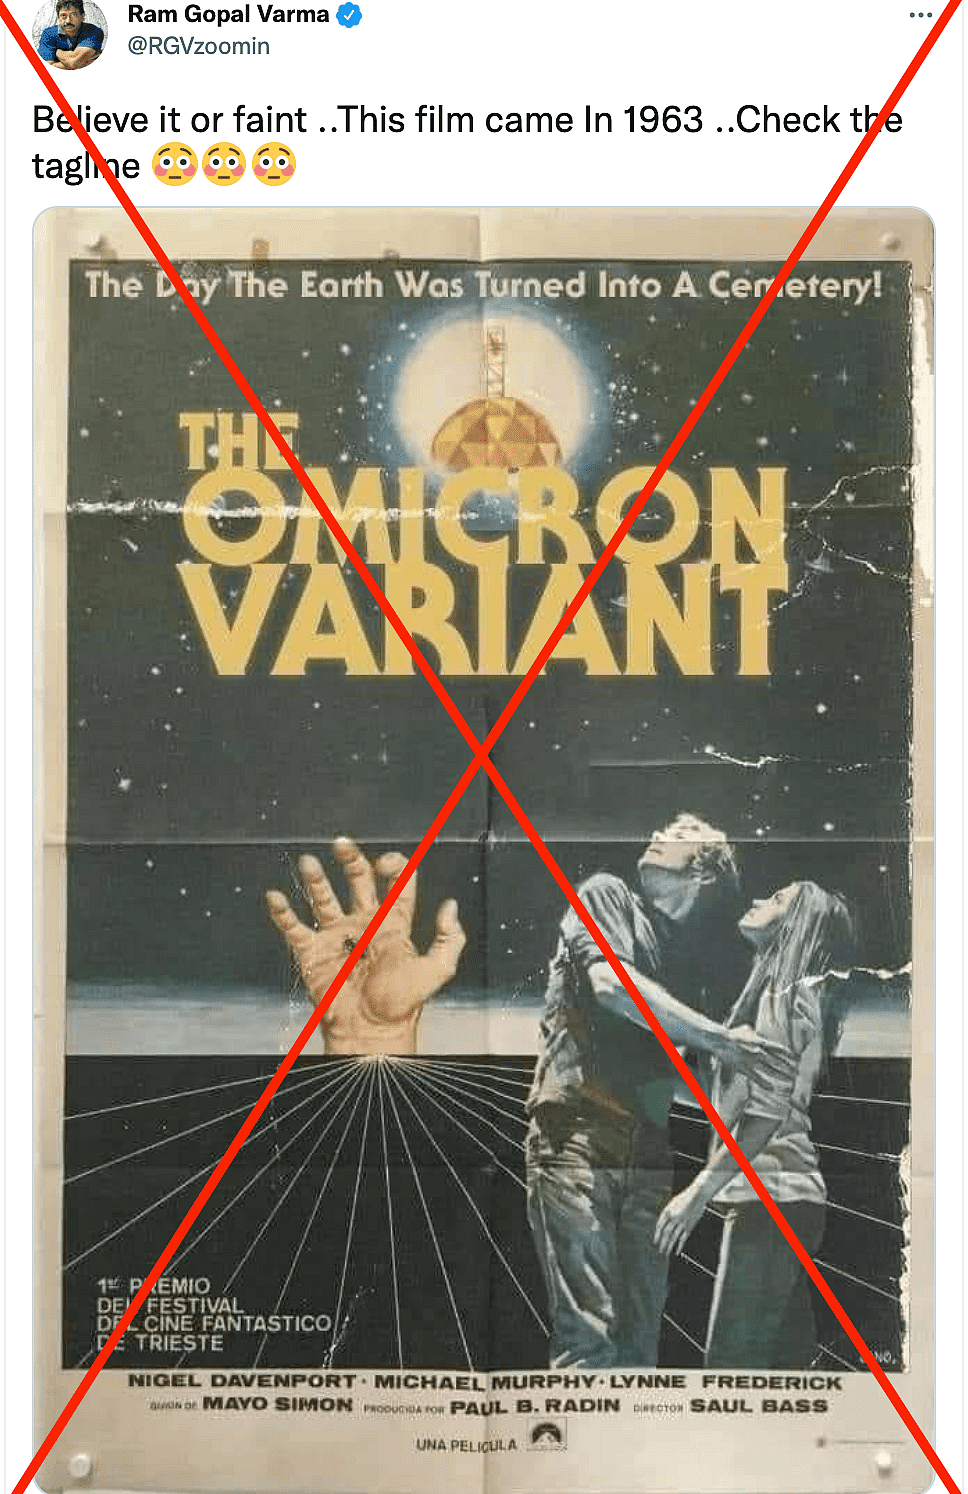 एक फोटोशॉप किया हुआ पोस्टर इस दावे से शेयर हो रहा है कि 'द ओमिक्रॉन वैरिएंट' नाम की एक फिल्म 1963 में रिलीज हुई थी.